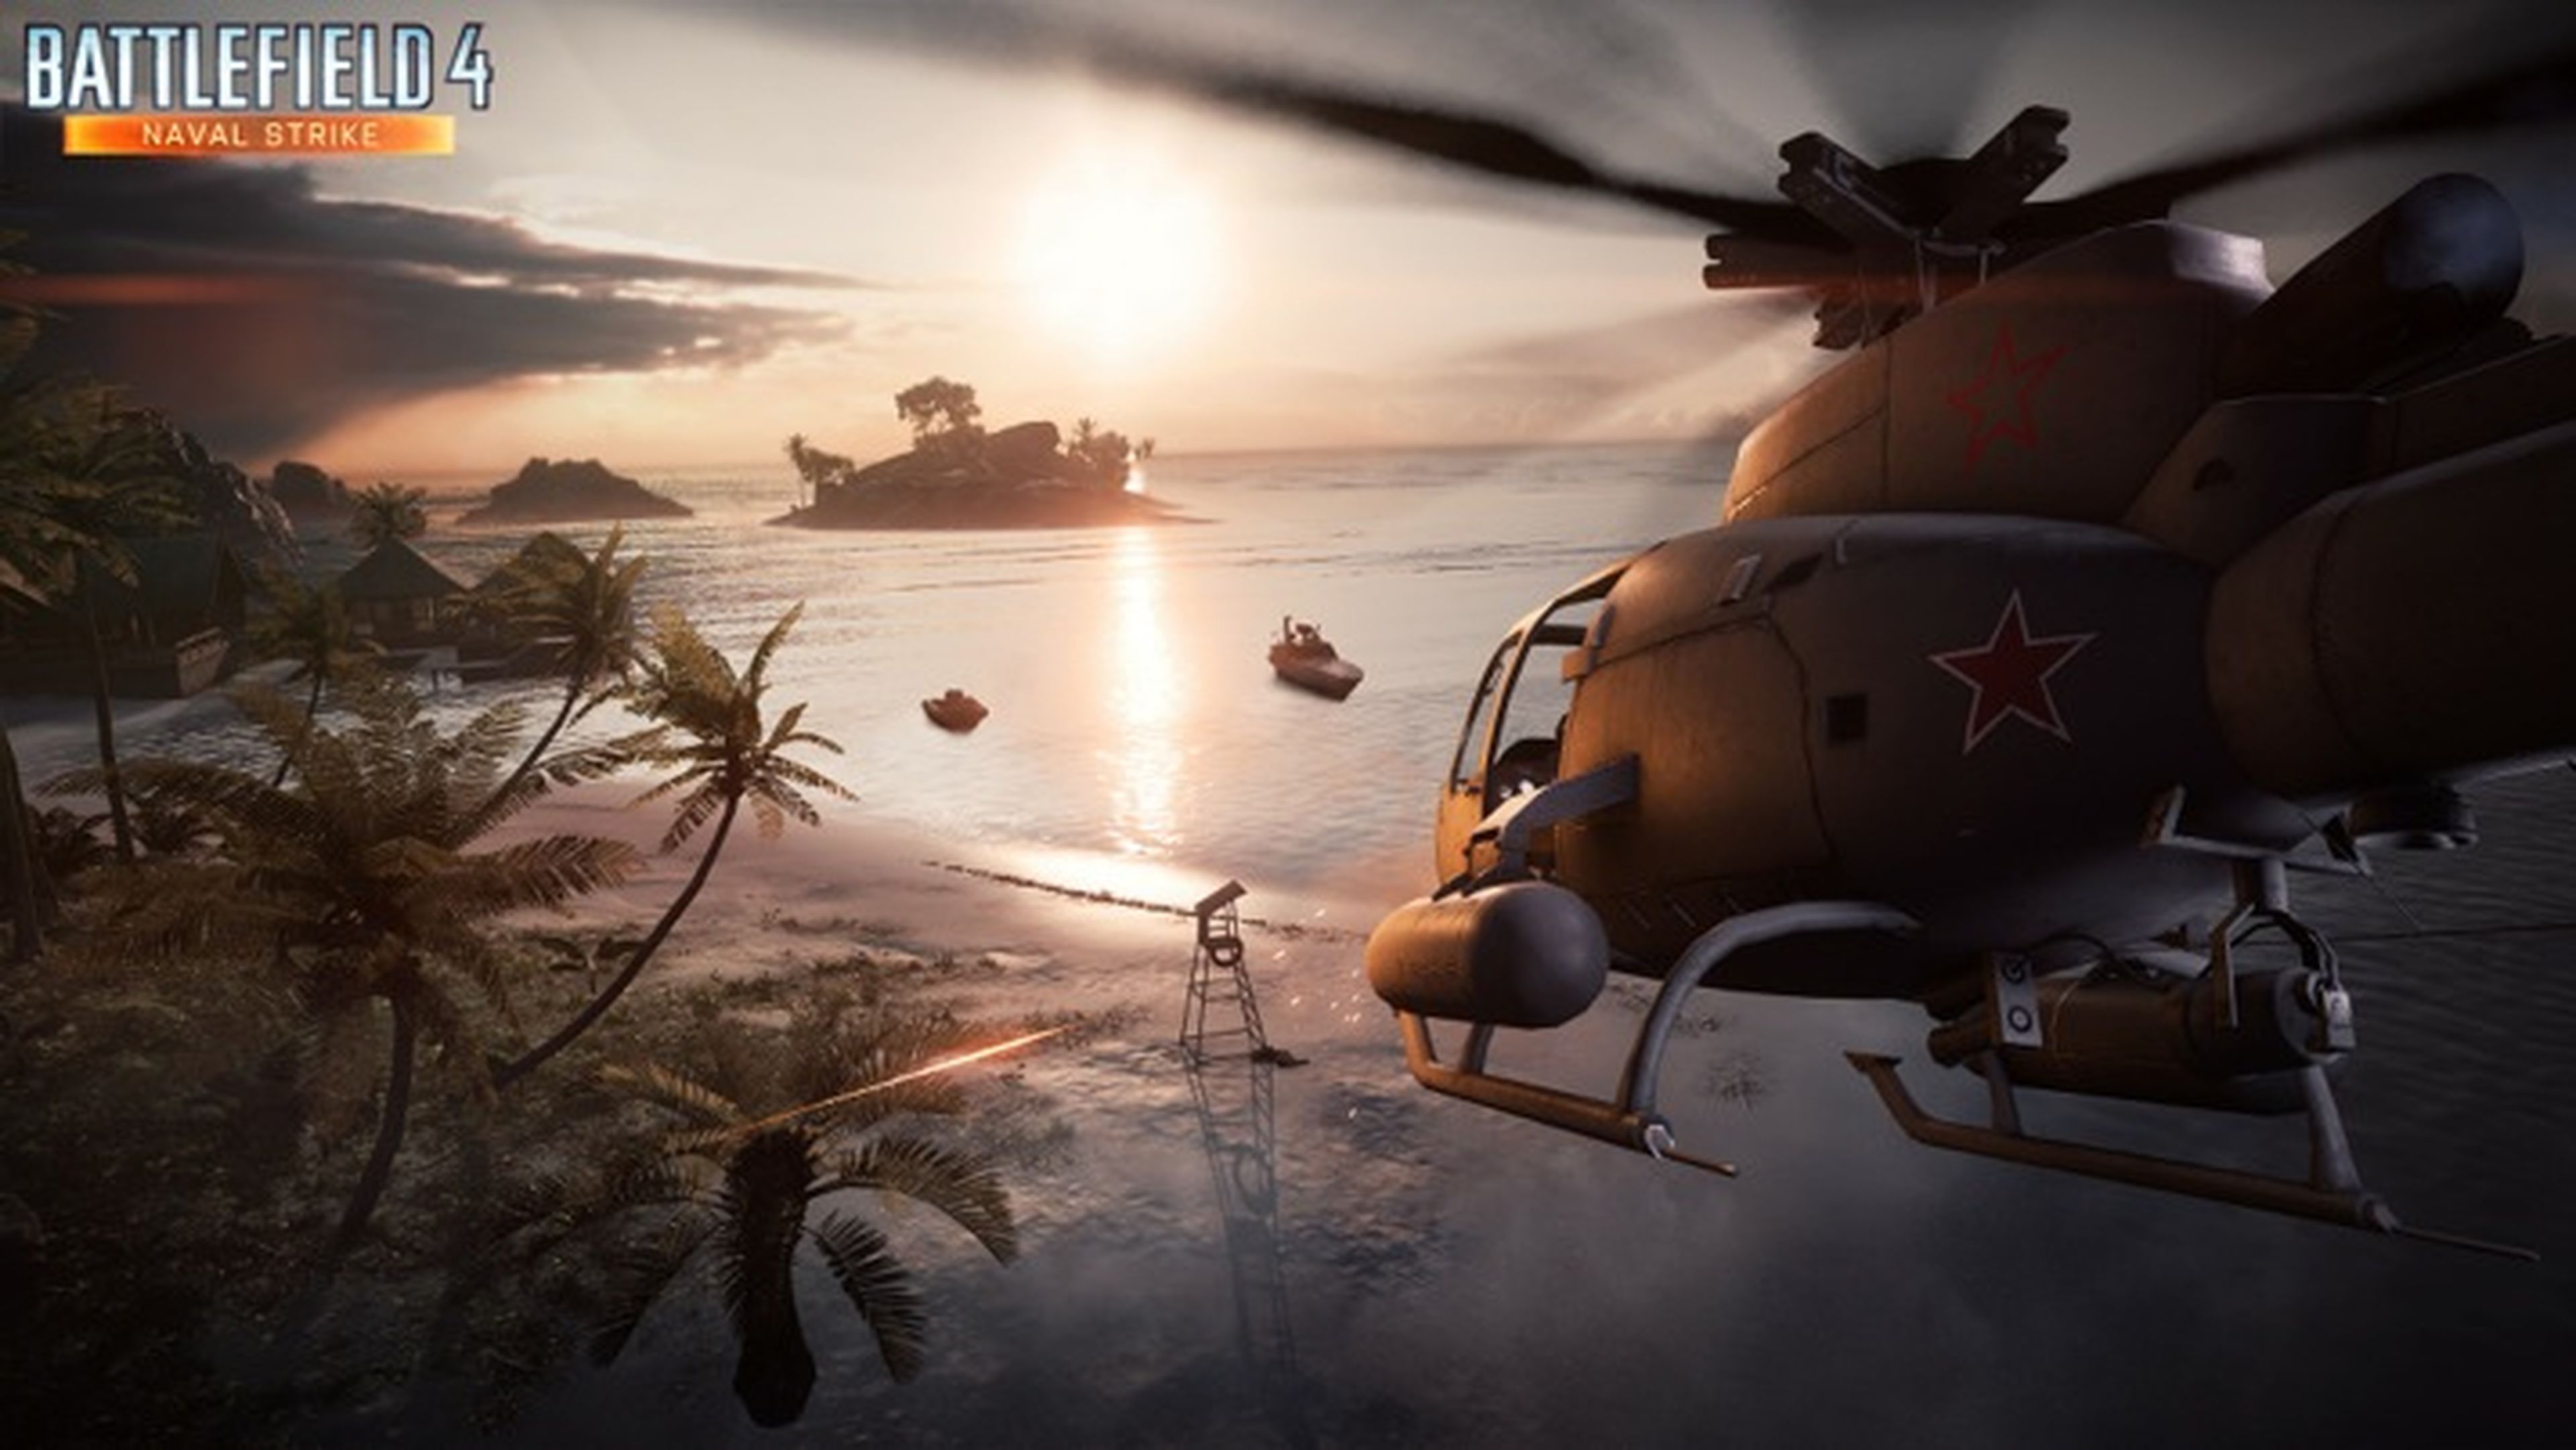 Battlefield 4: Naval Strike, disponible para todos el 15 de abril